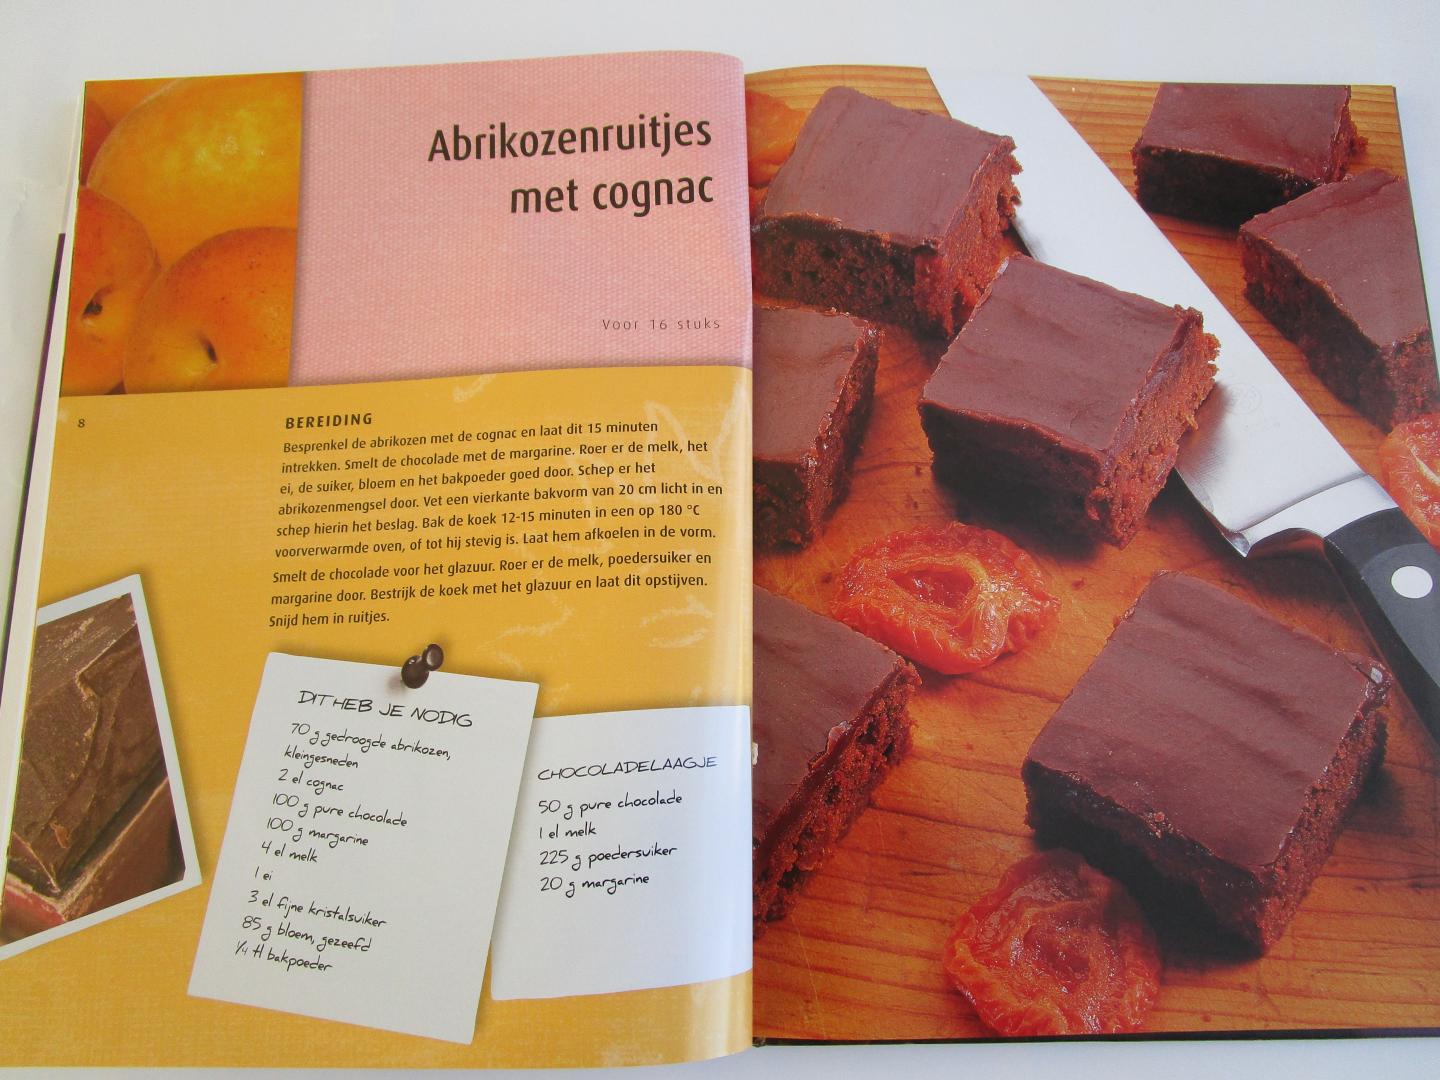 R&R Publishing  (recepten en foto's) - Brownies  - chocoladecake ...  maar dan even anders -